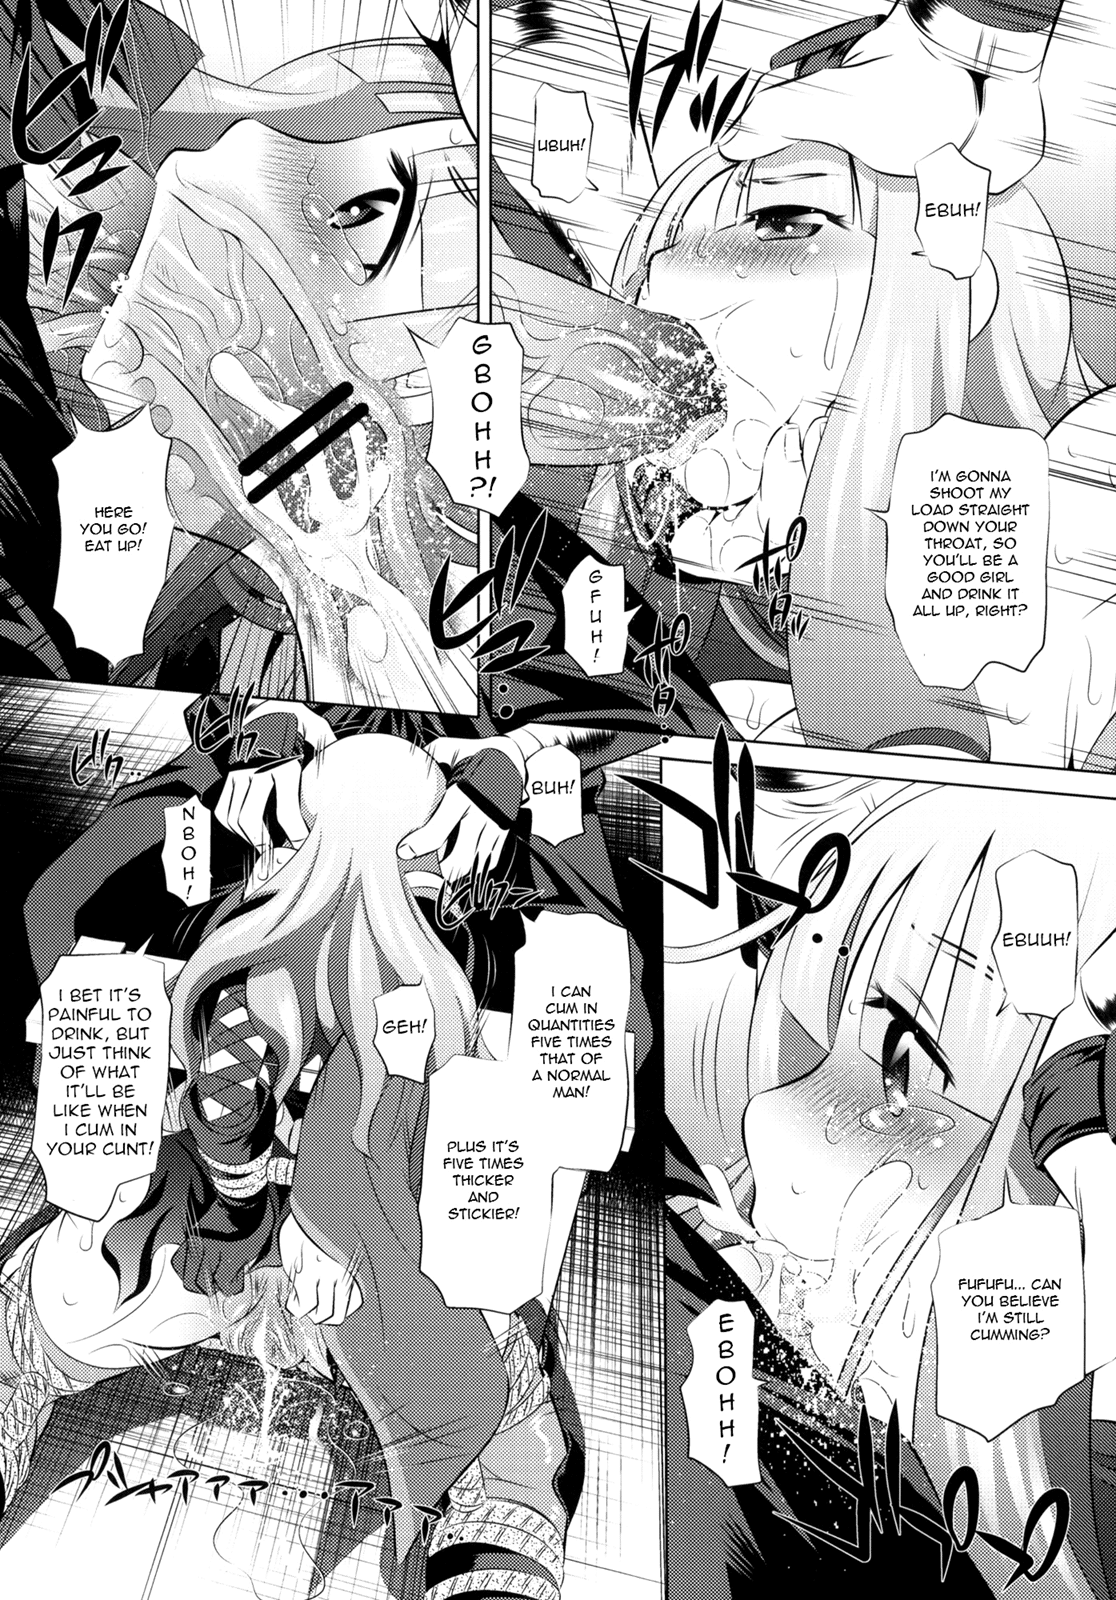 Togame vs Horse hentai manga picture 4